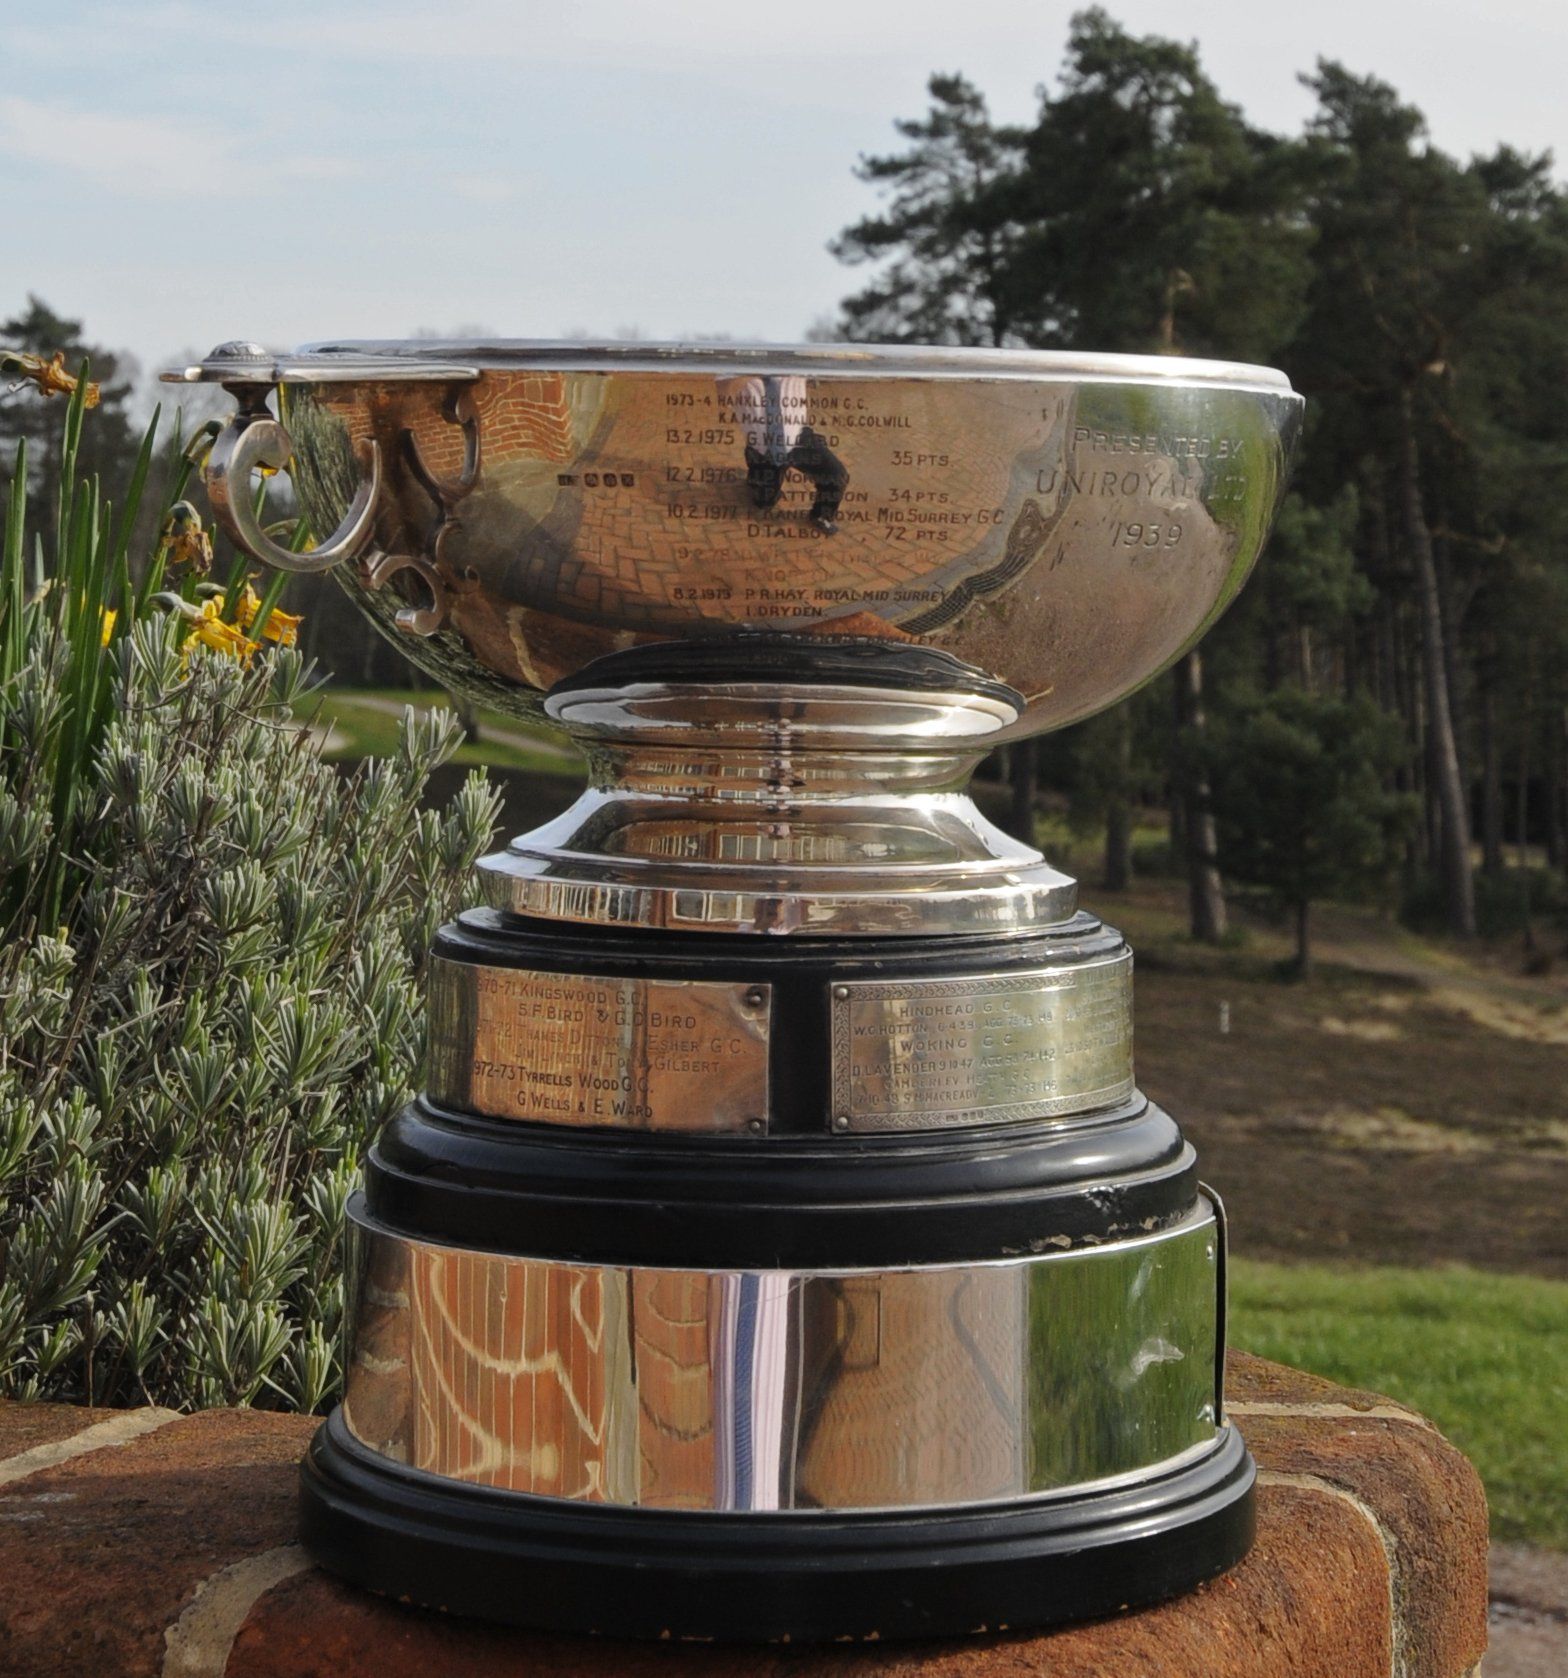 Guildford Golfing Alliance Uniroyal Quaich Foursomes trophy